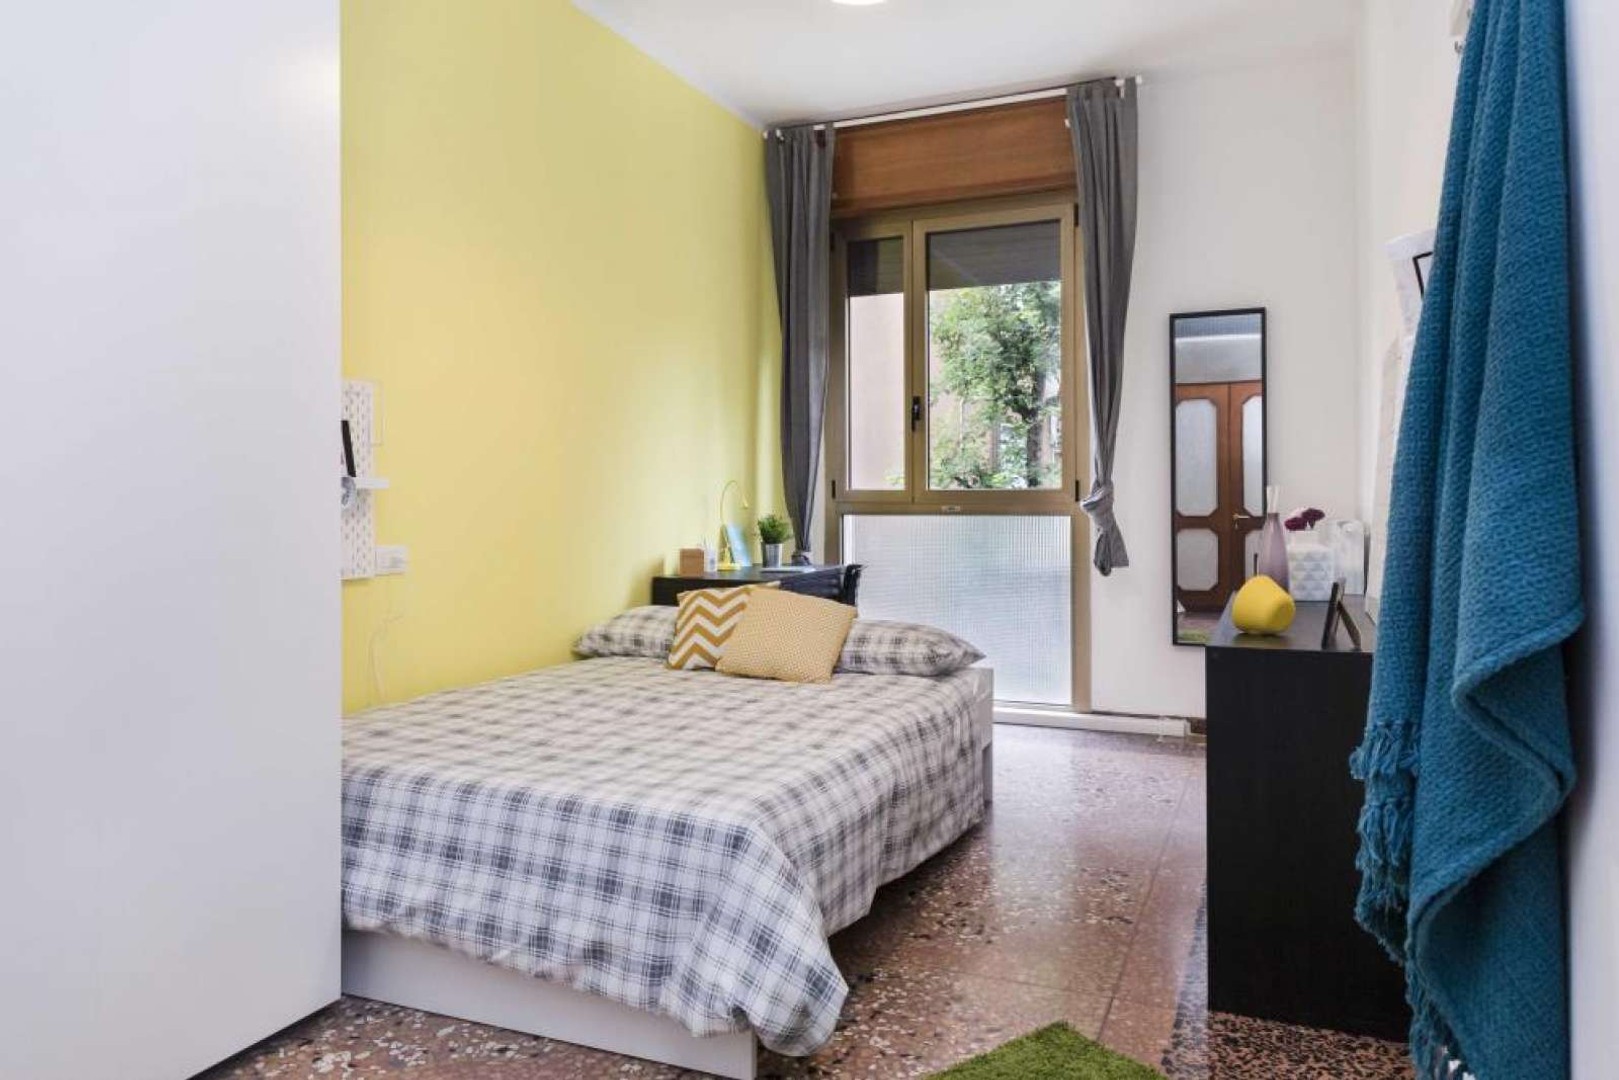 Bologna de çift kişilik yataklı kiralık oda